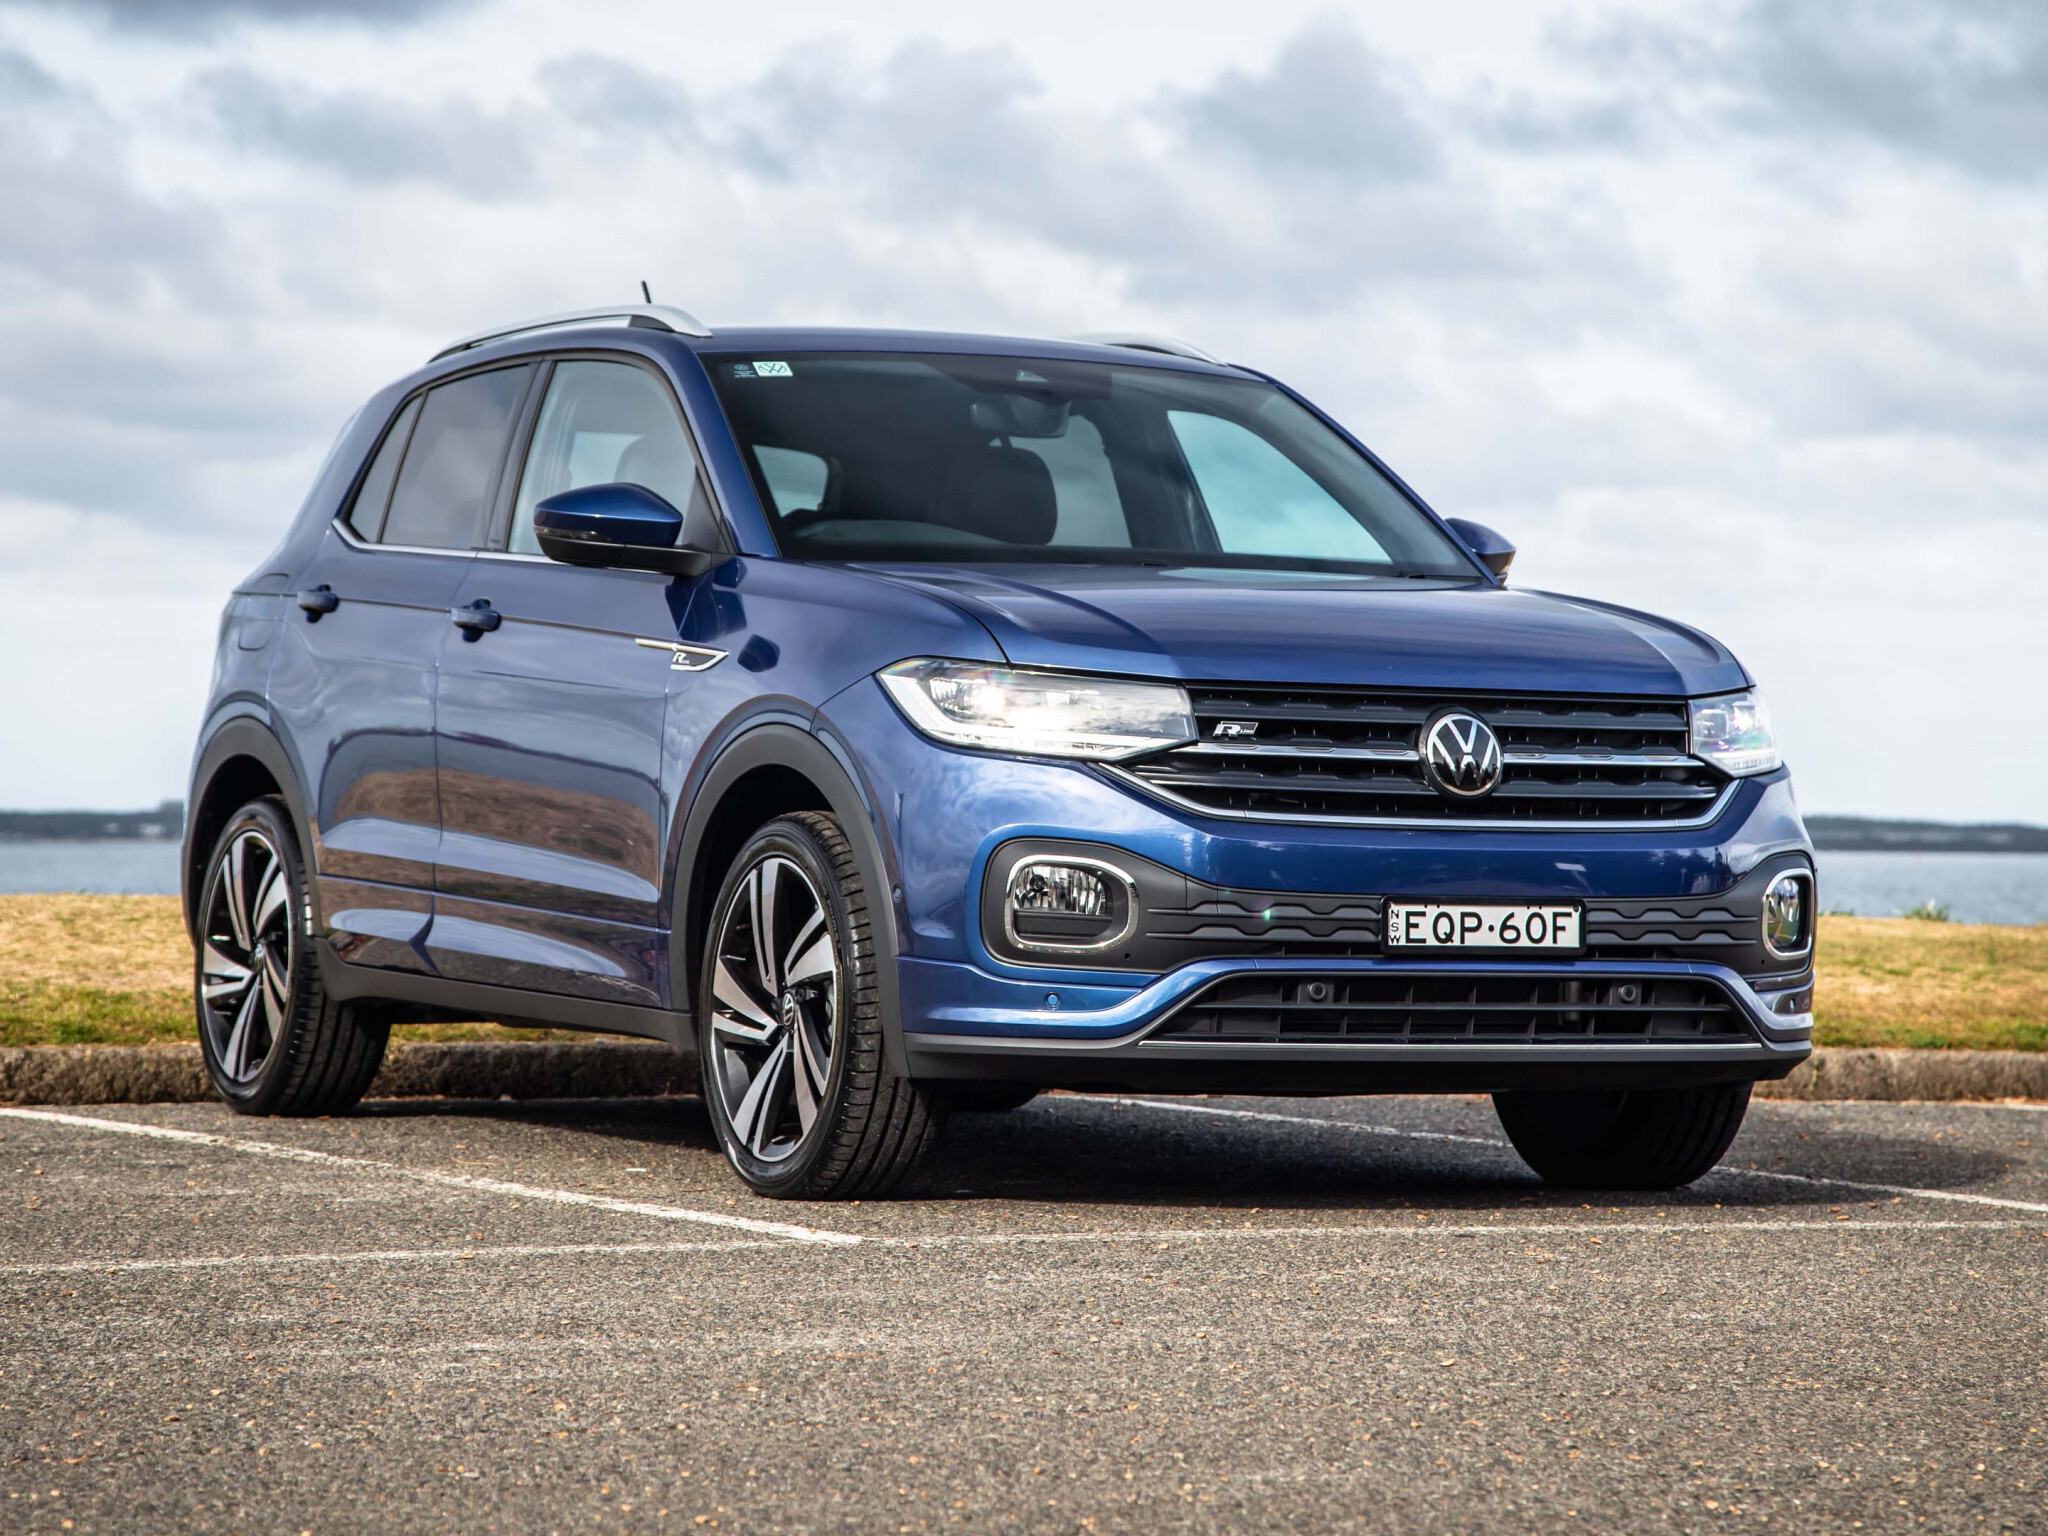 2022 Volkswagen T-Cross review: Style